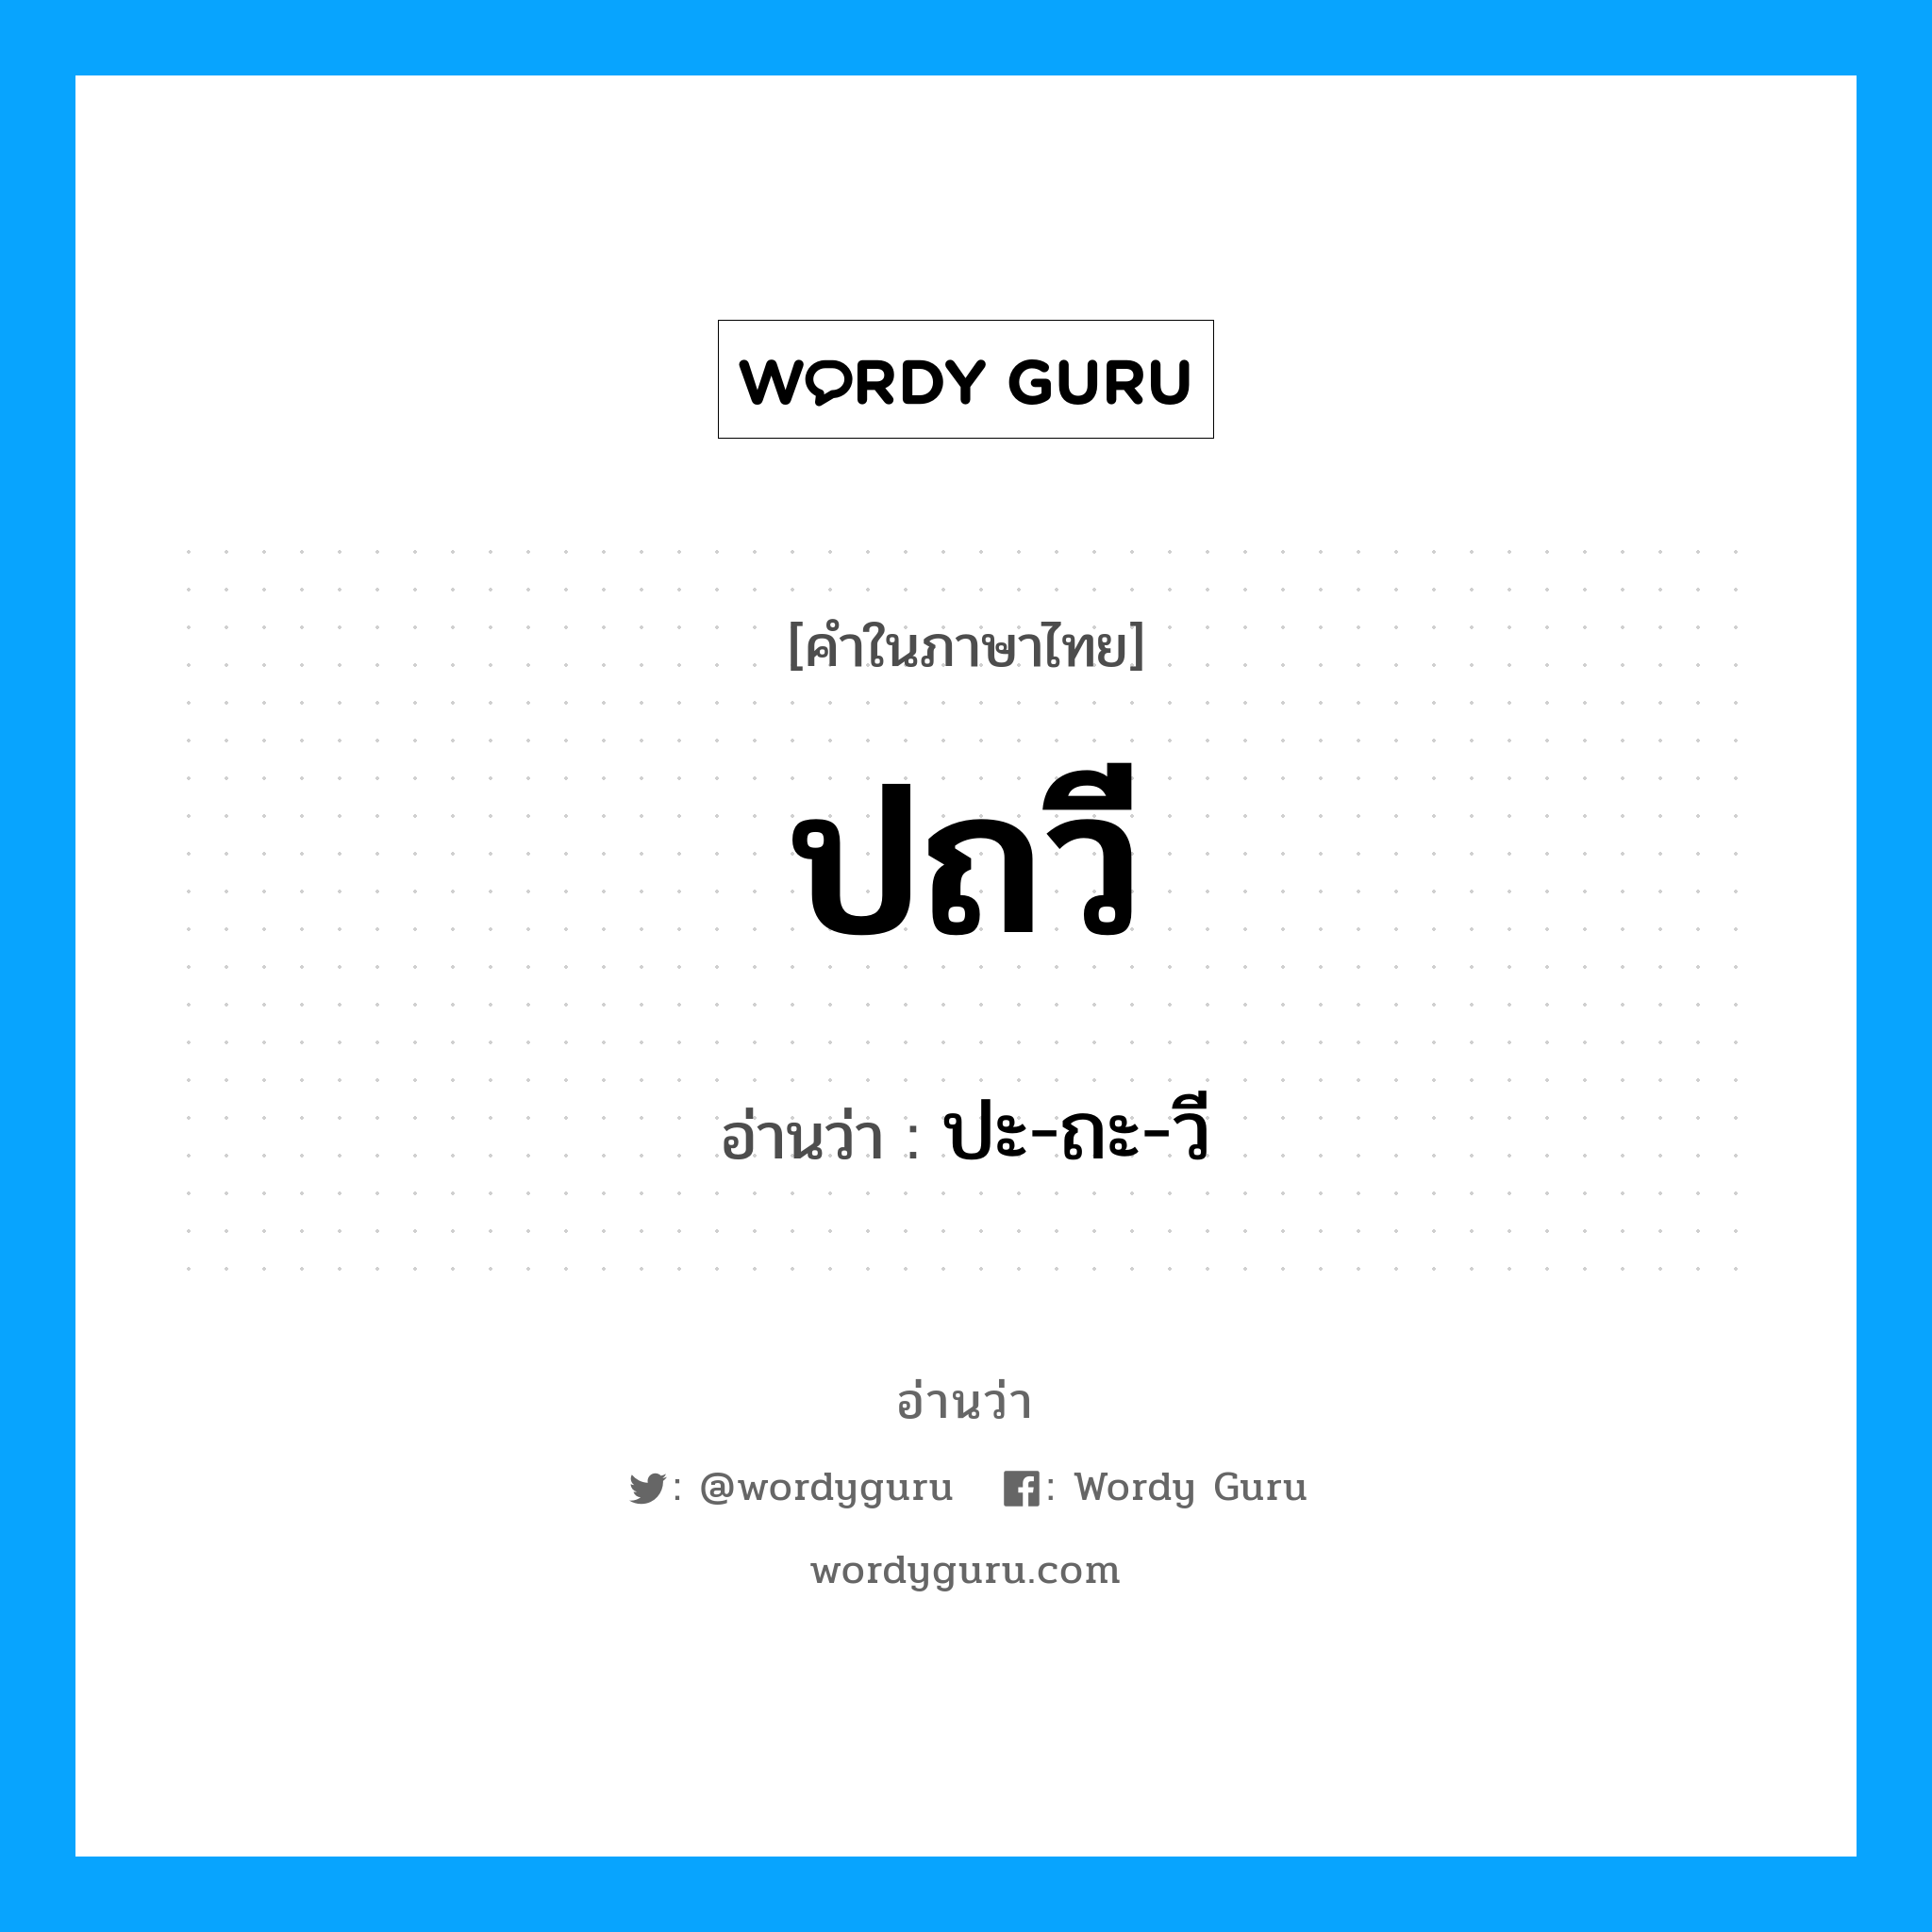 ปะ-ถะ-วี เป็นคำอ่านของคำไหน?, คำในภาษาไทย ปะ-ถะ-วี อ่านว่า ปถวี